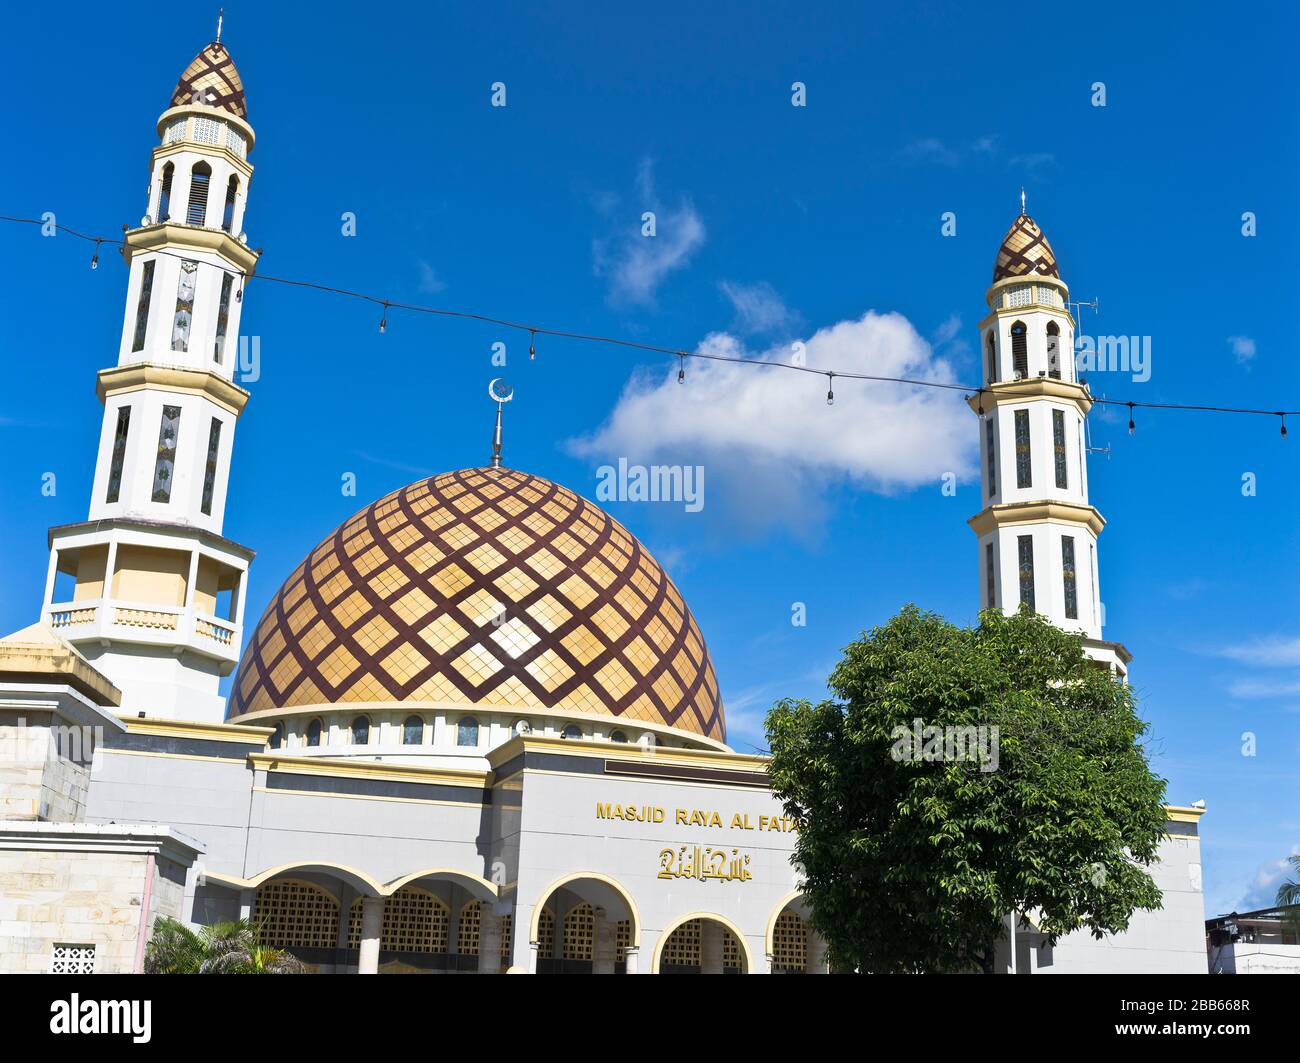 dh Masjid Raya al Fatah Asia AMBON MALUKU INDONESIA Grand Moschee große Kuppel Minarett Turm indonesische Architektur Kuppeldach Türme Muslimisches Gebet Stockfoto